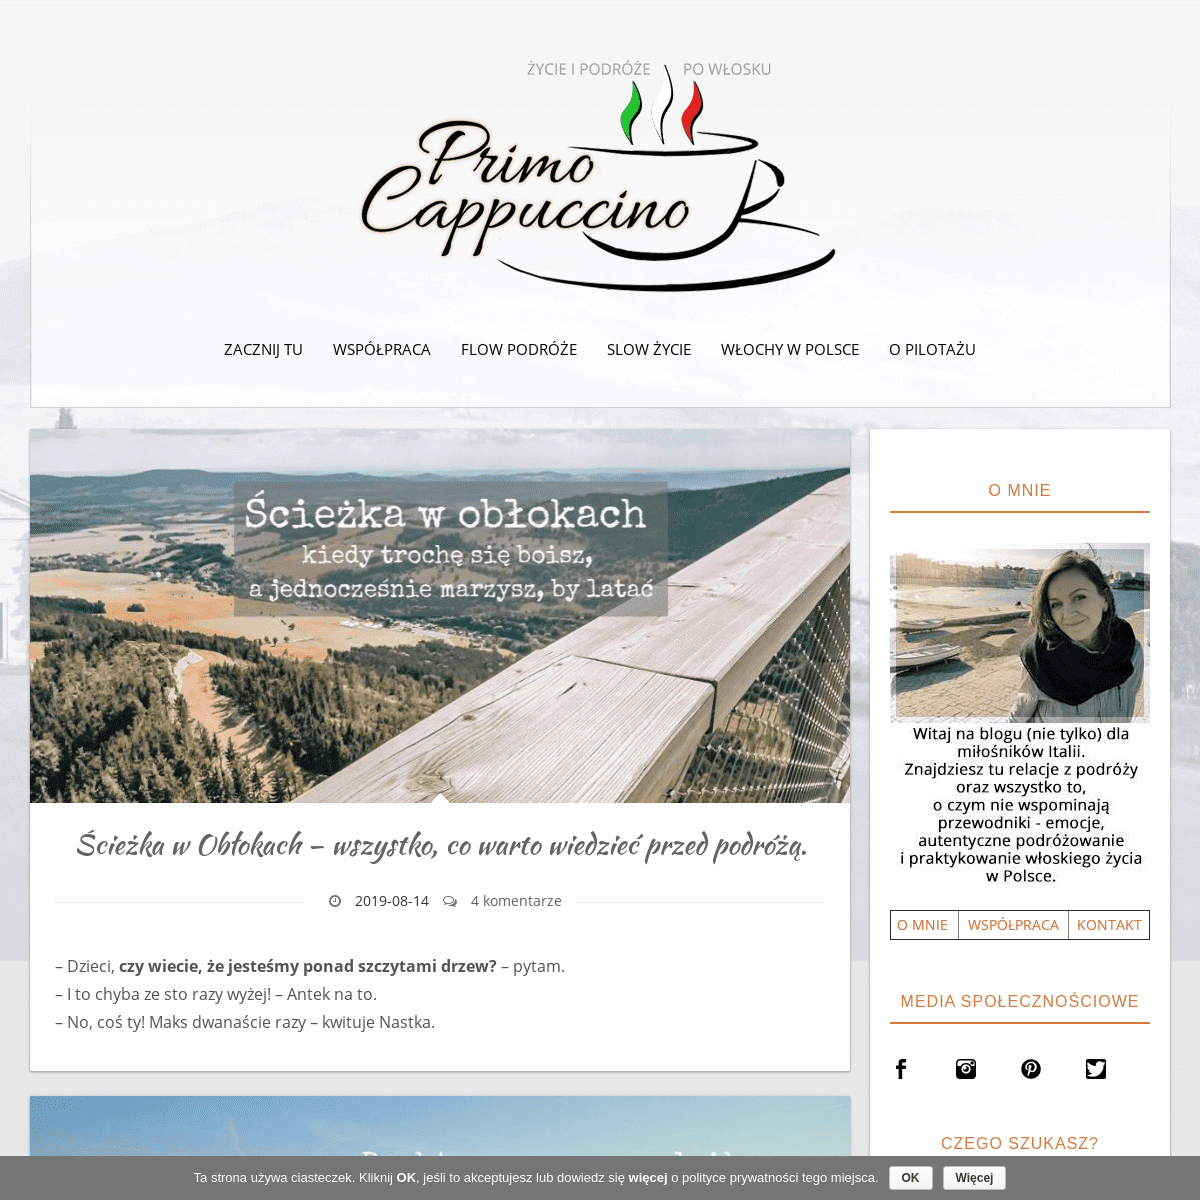 Primo Cappuccino - Życie i podróże po włosku.Primo Cappuccino - Życie i podróże po włosku.